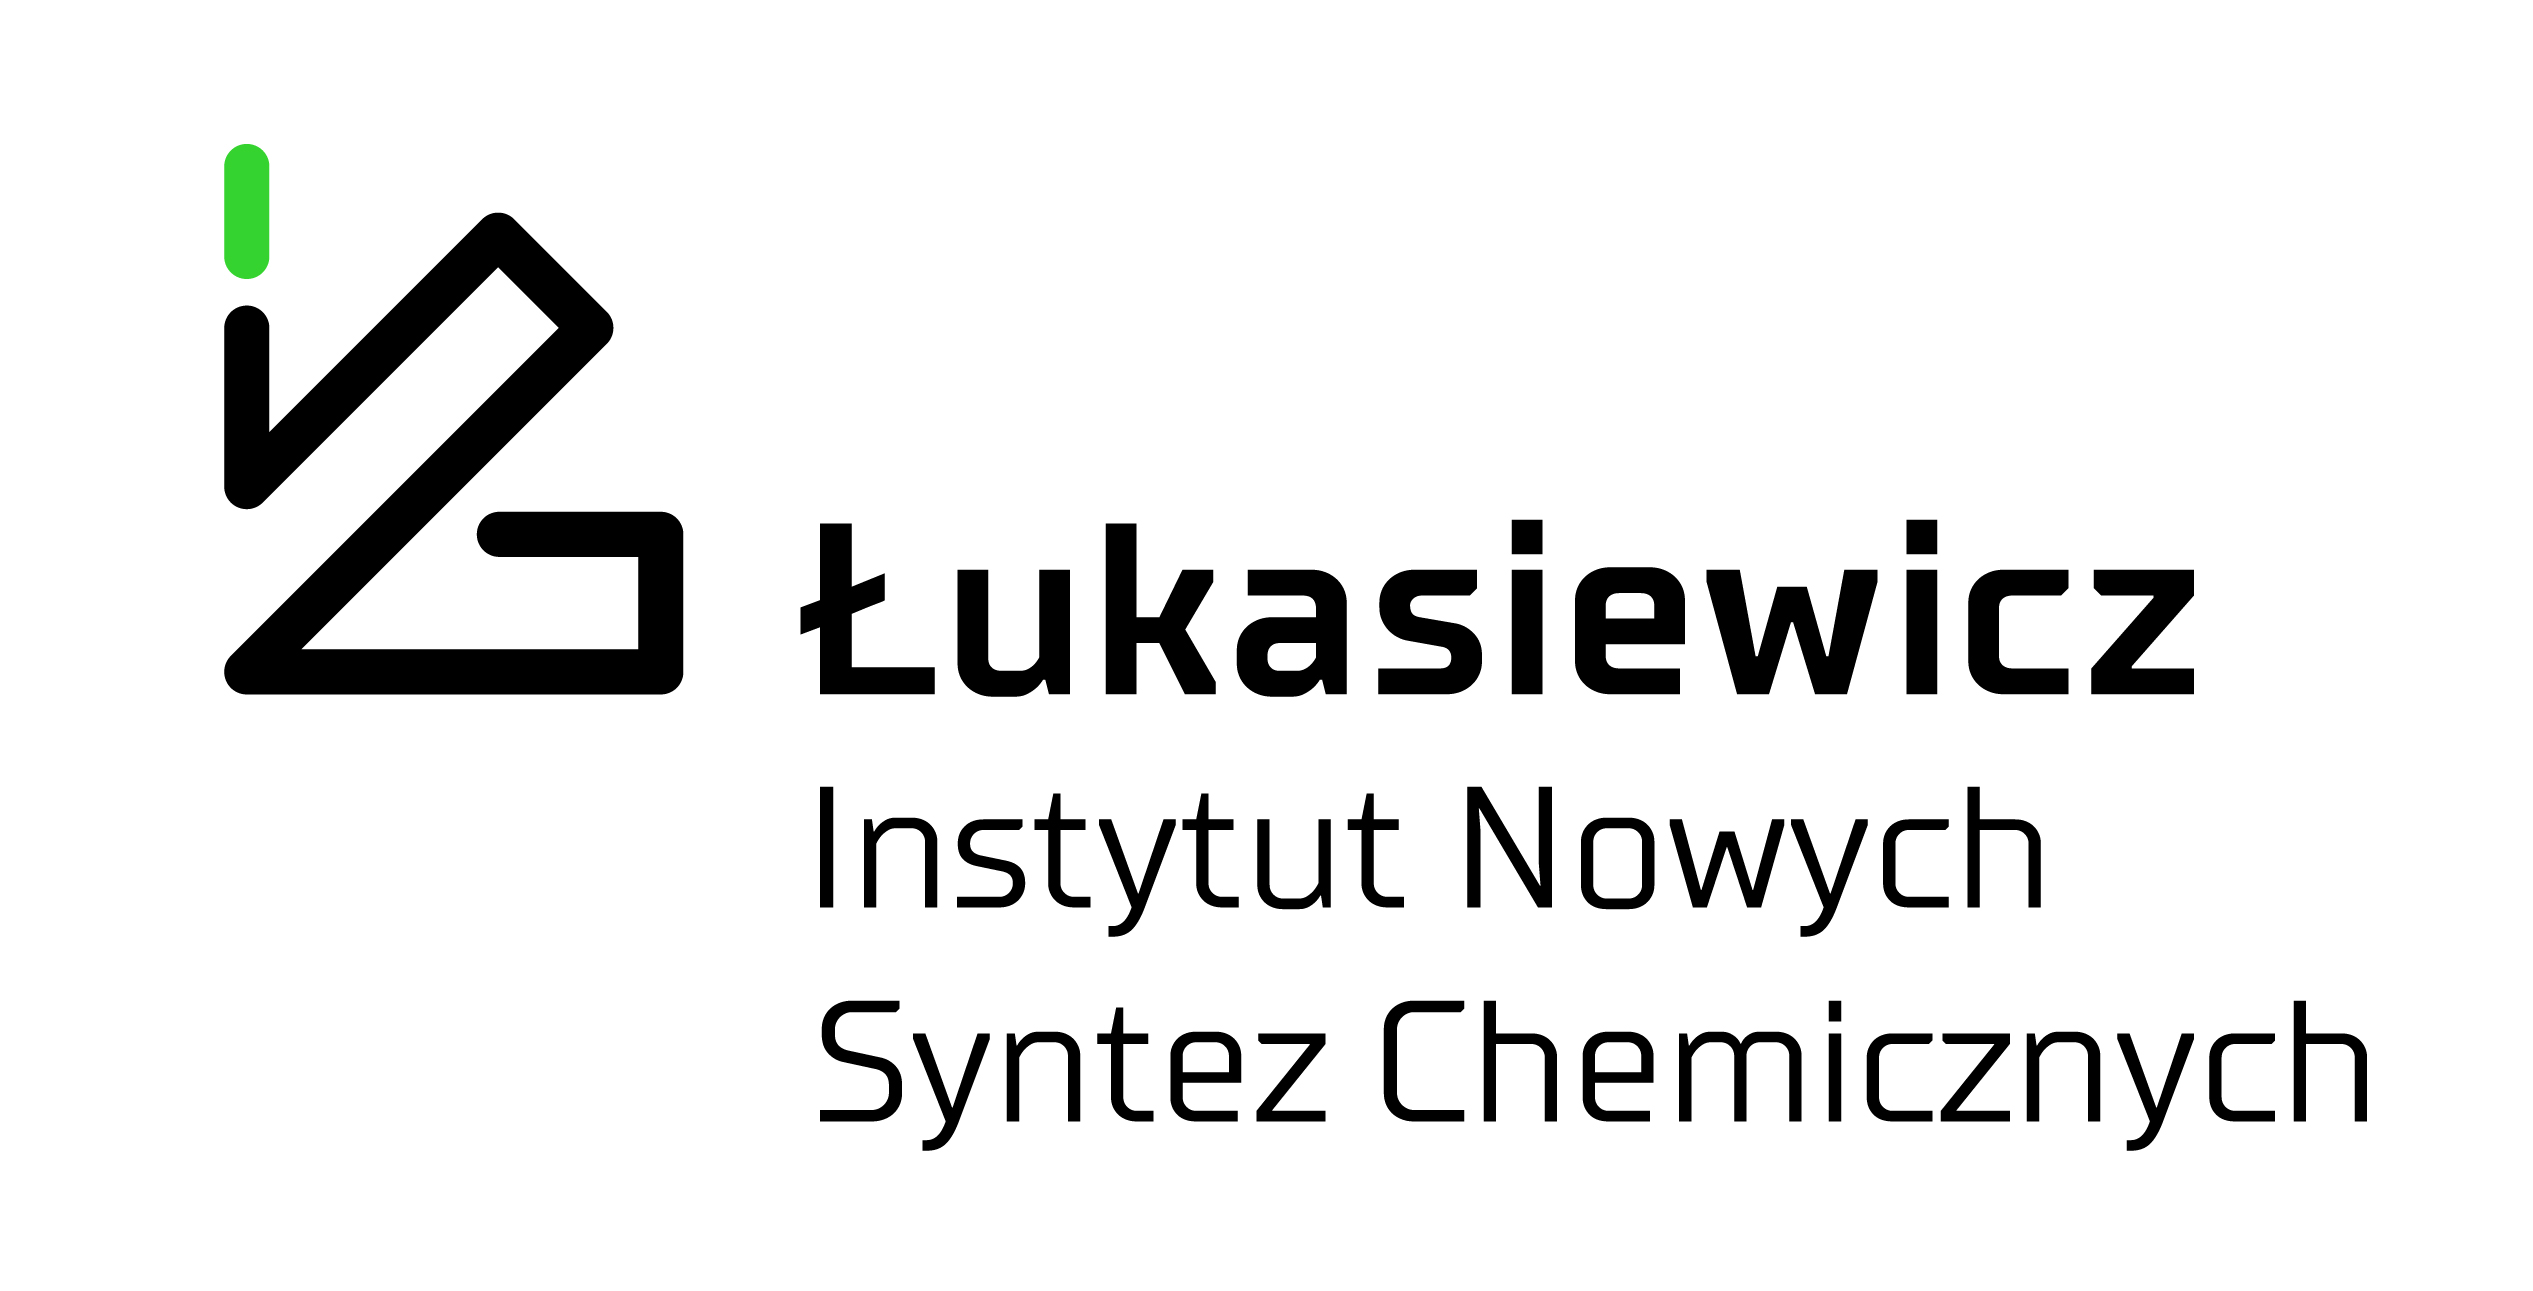 Sieć Badawcza Łukasiewicz – Instytut Nowych Syntez Chemicznych